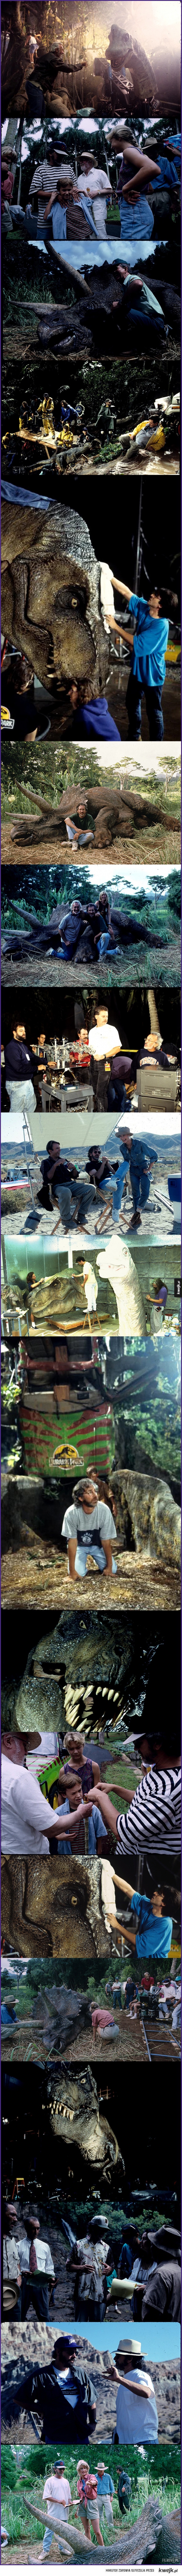 Zdjęcia z planu Jurassic Park, których pewnie nie znałeś